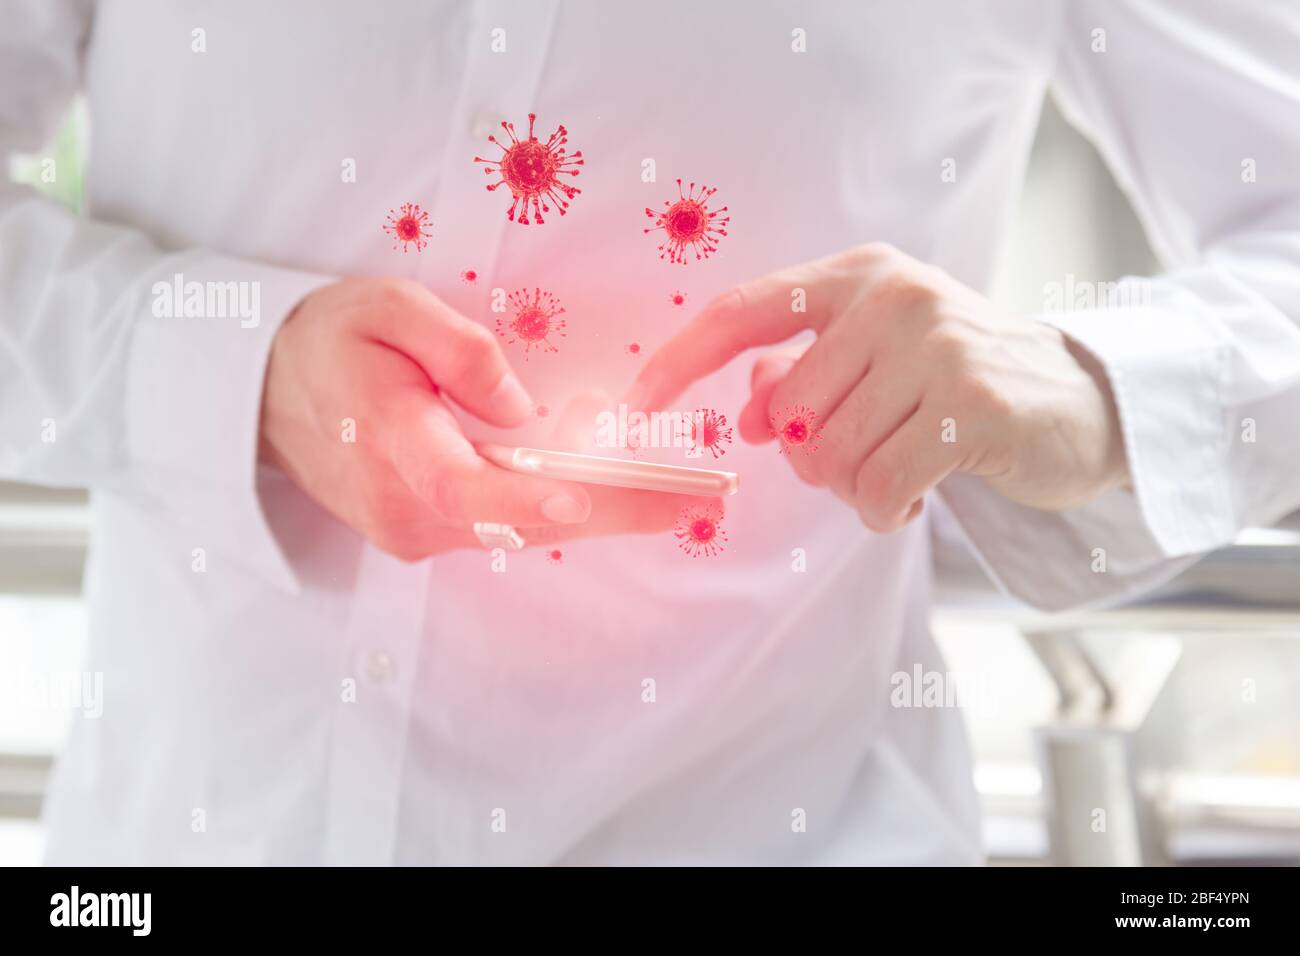 Los teléfonos sucios pueden transmitir Coronavirus, el dedo de cierre mediante la pantalla táctil del smartphone transfiere virus sucio infectado a mano. Foto de stock